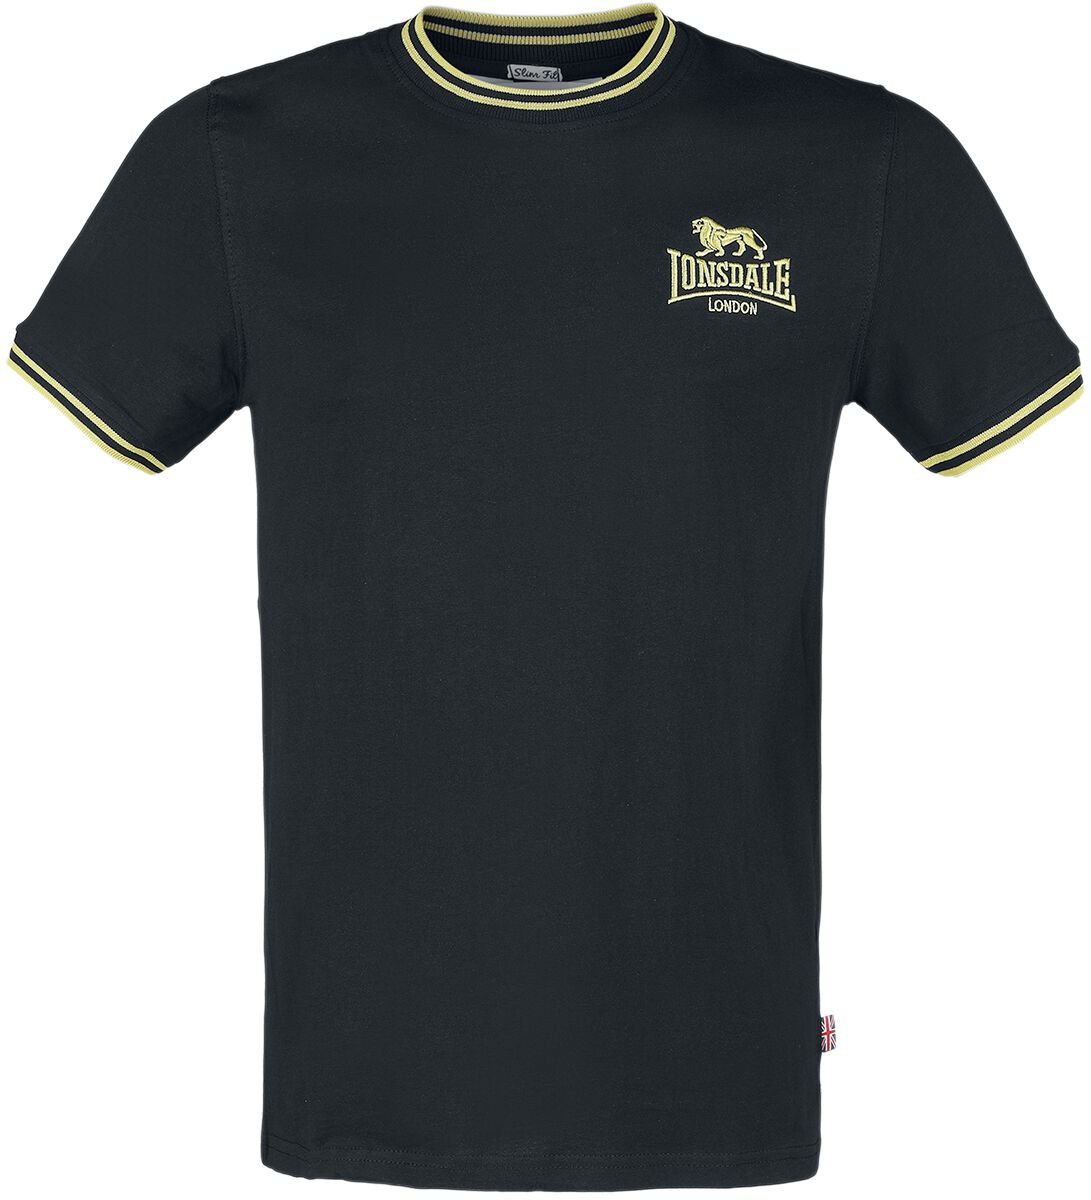 Lonsdale London T-Shirt - DUCANSBY - S bis XXL - für Männer - Größe L - schwarz